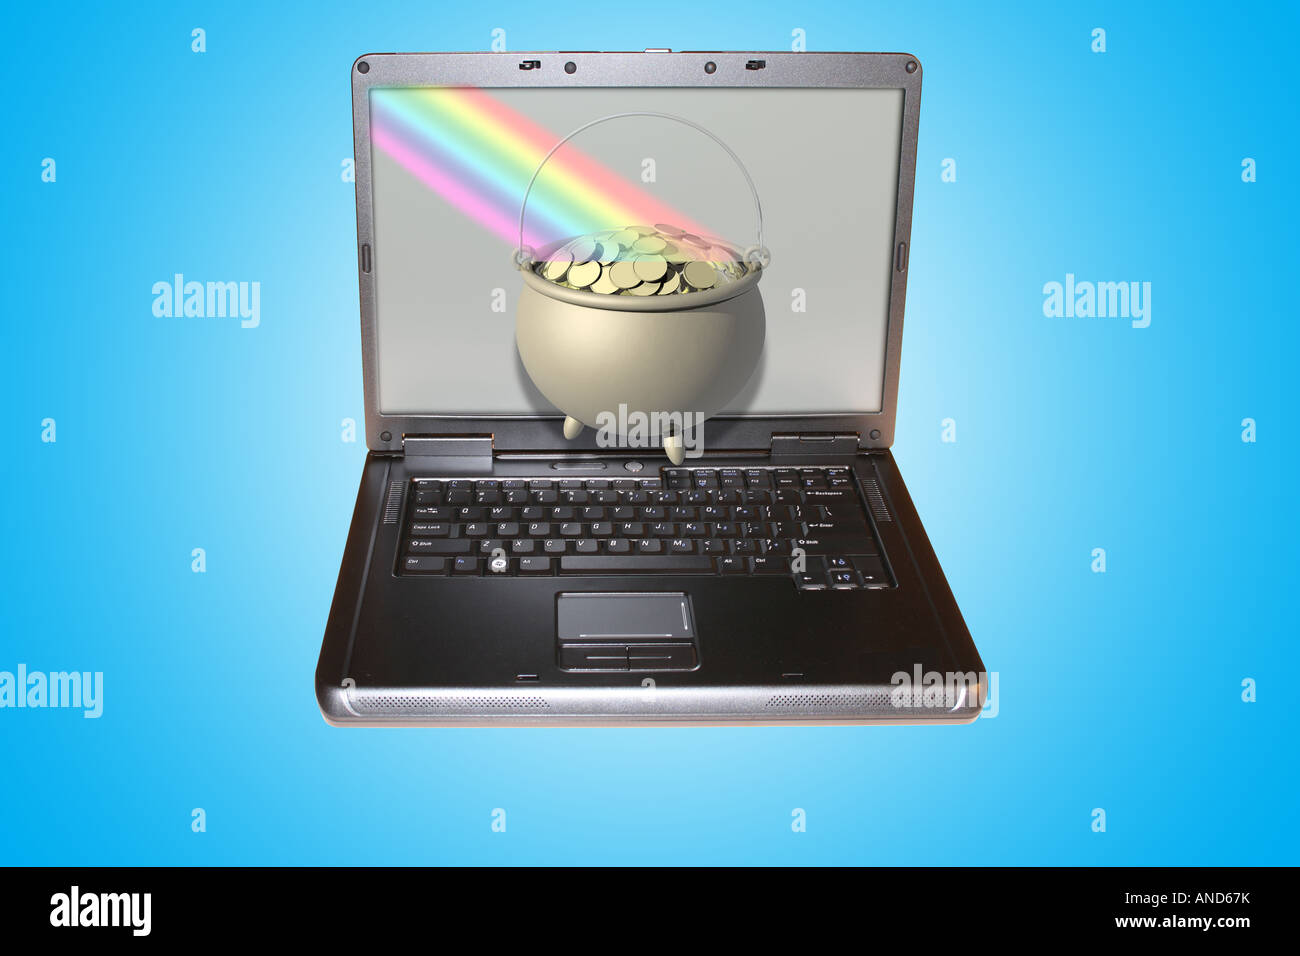 Ordenador portátil con una olla de oro al final del arco iris en la pantalla. Foto de stock